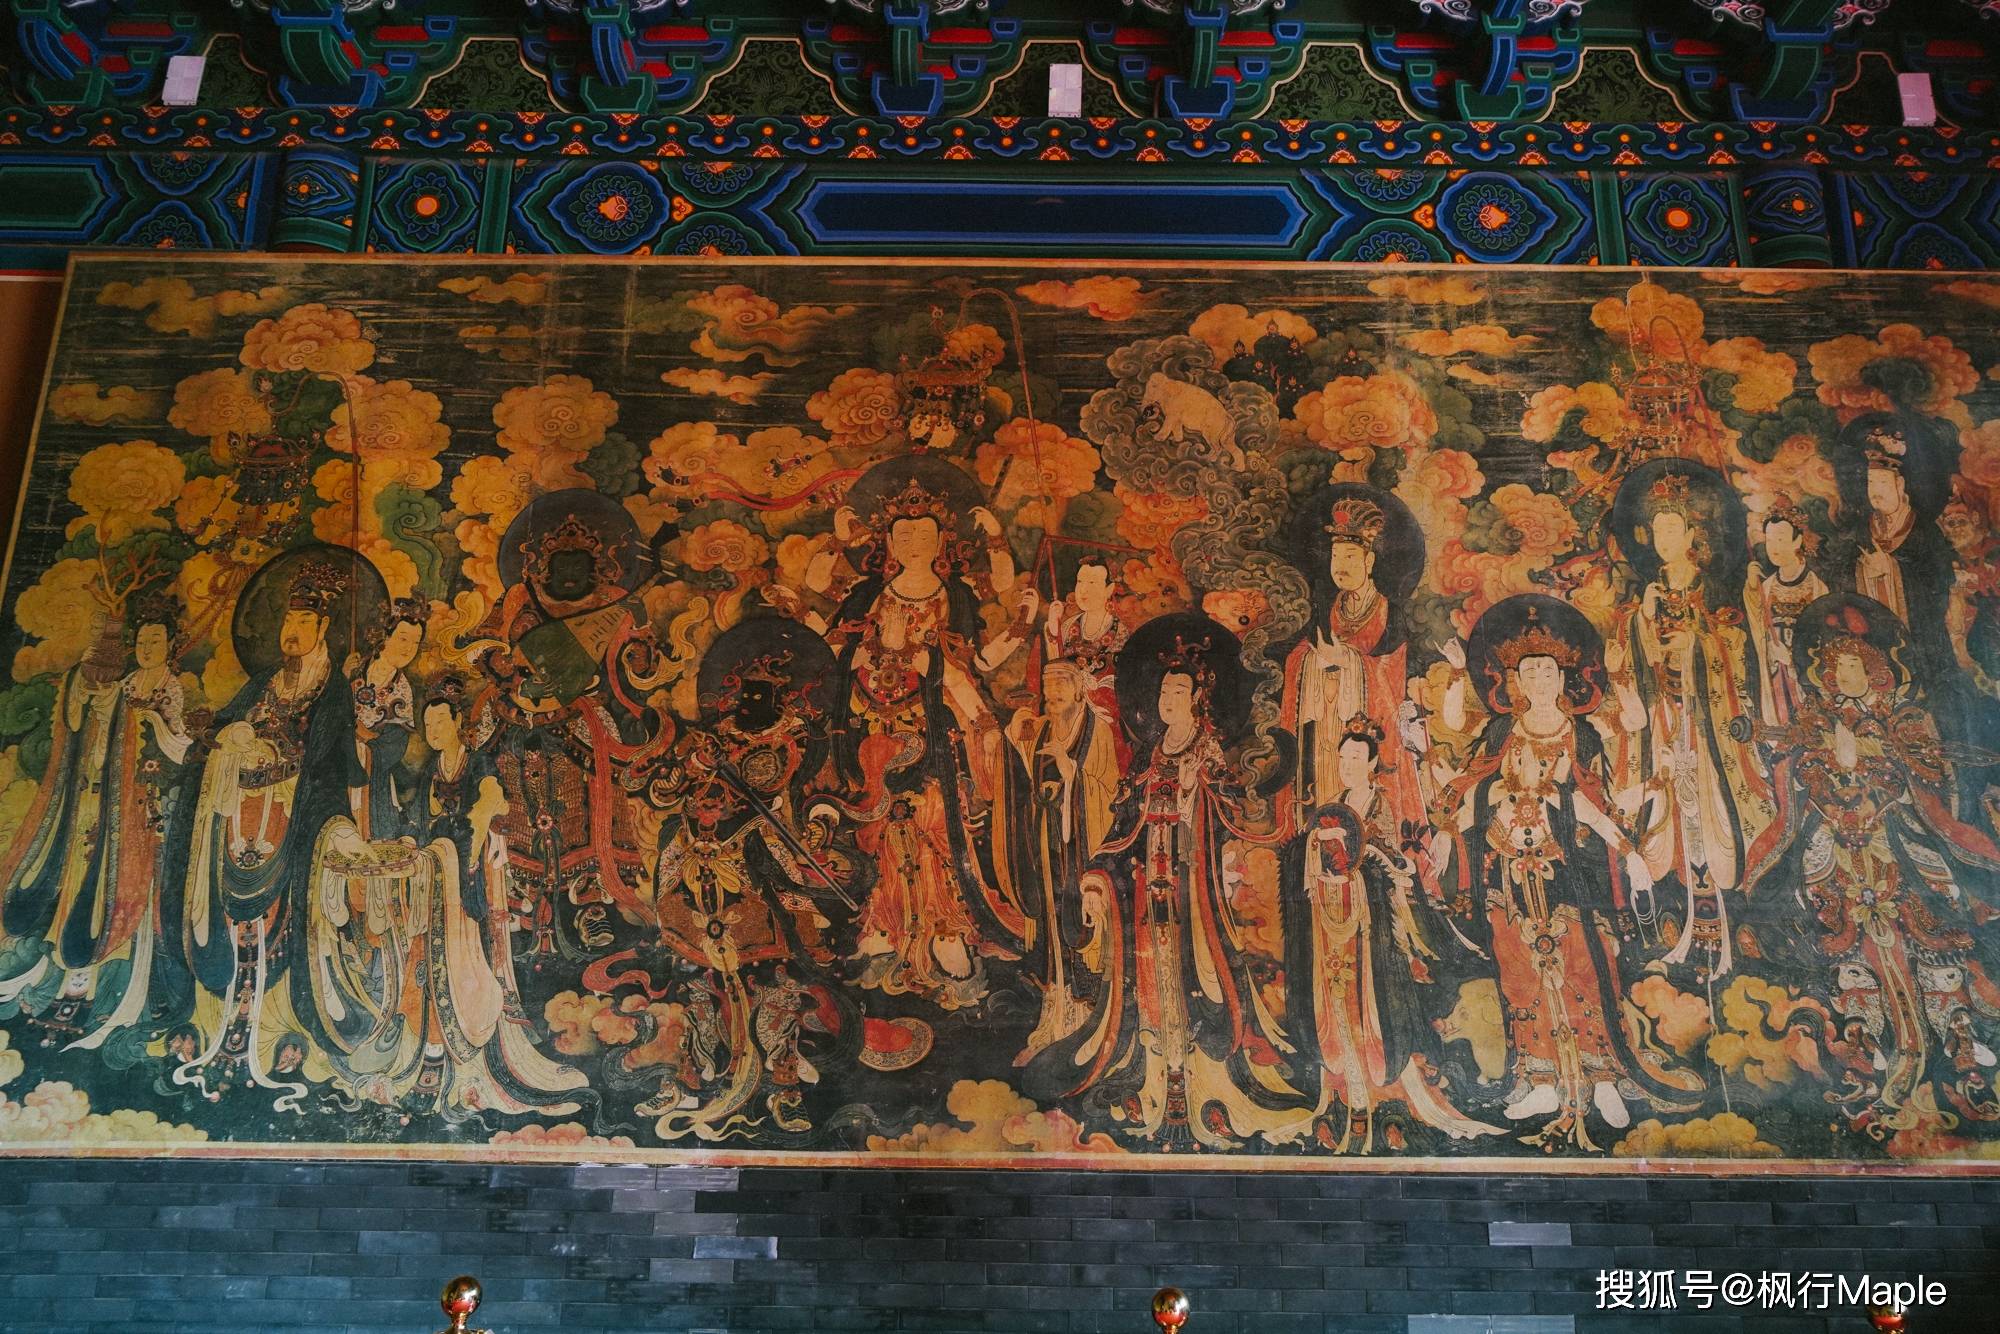 北京西郊法海寺,藏着近600年历史的明代壁画,精美程度媲美敦煌